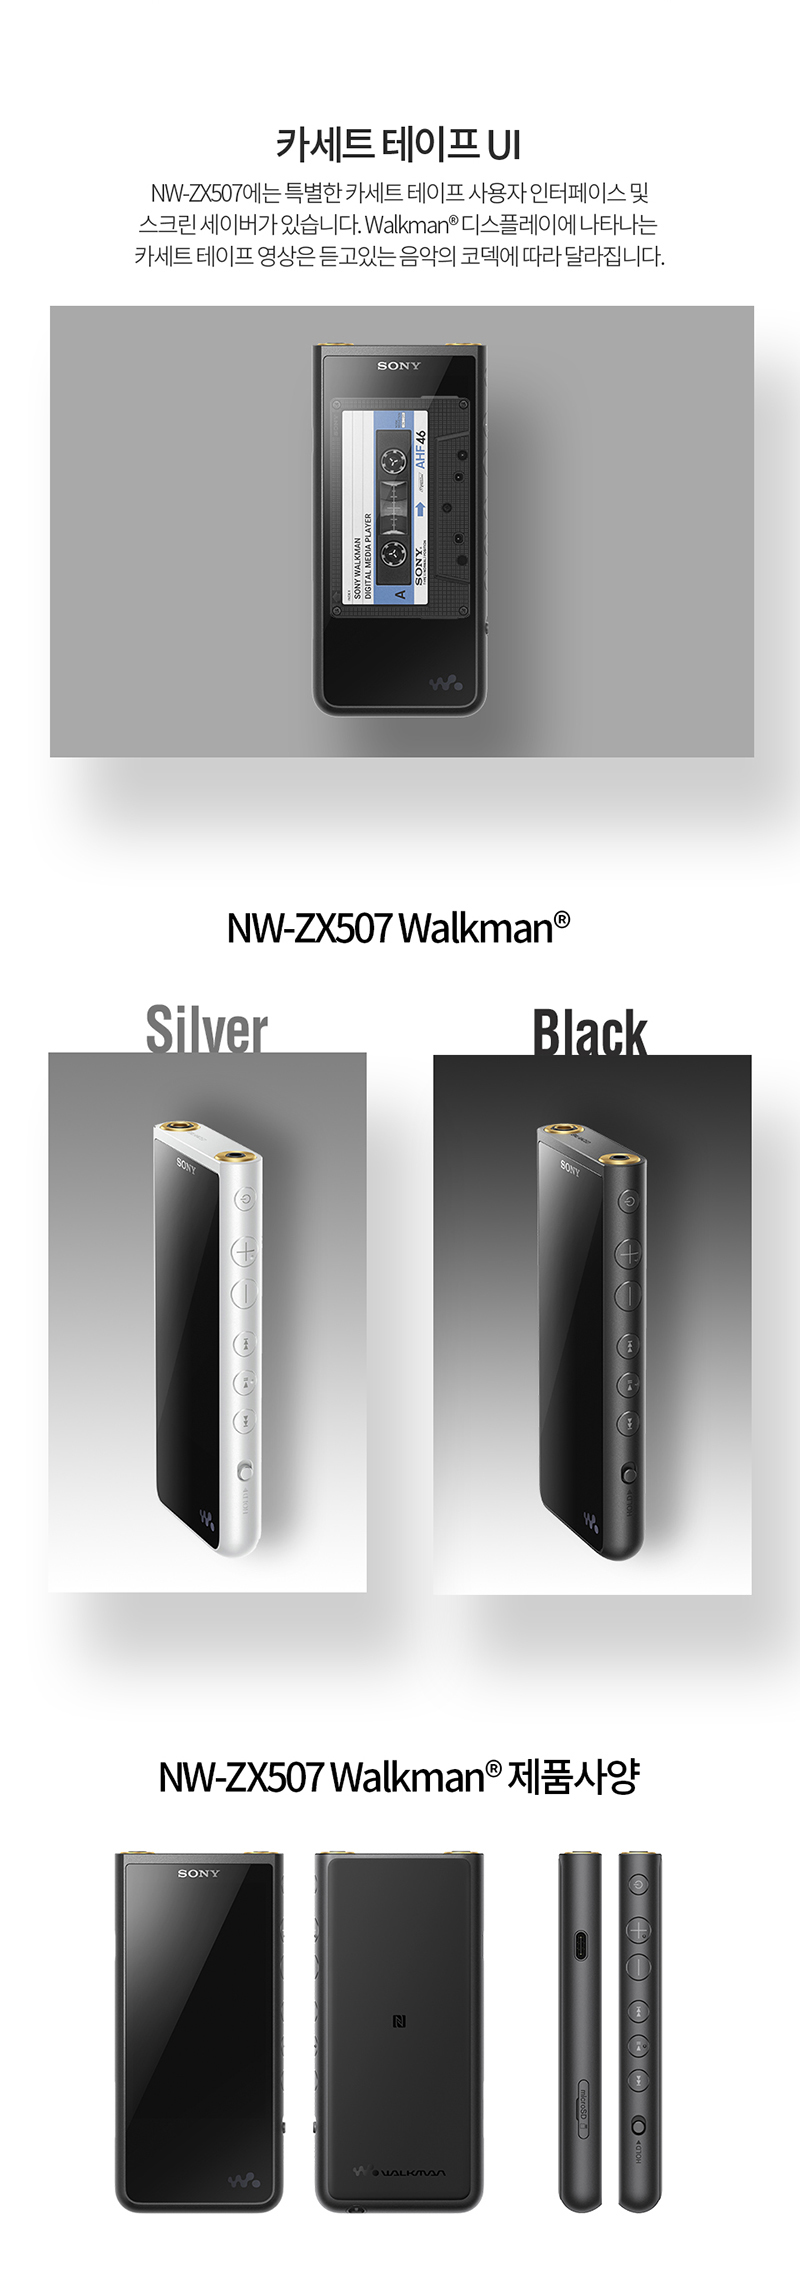 800_Walkman_NW-ZX507_20_01.jpg